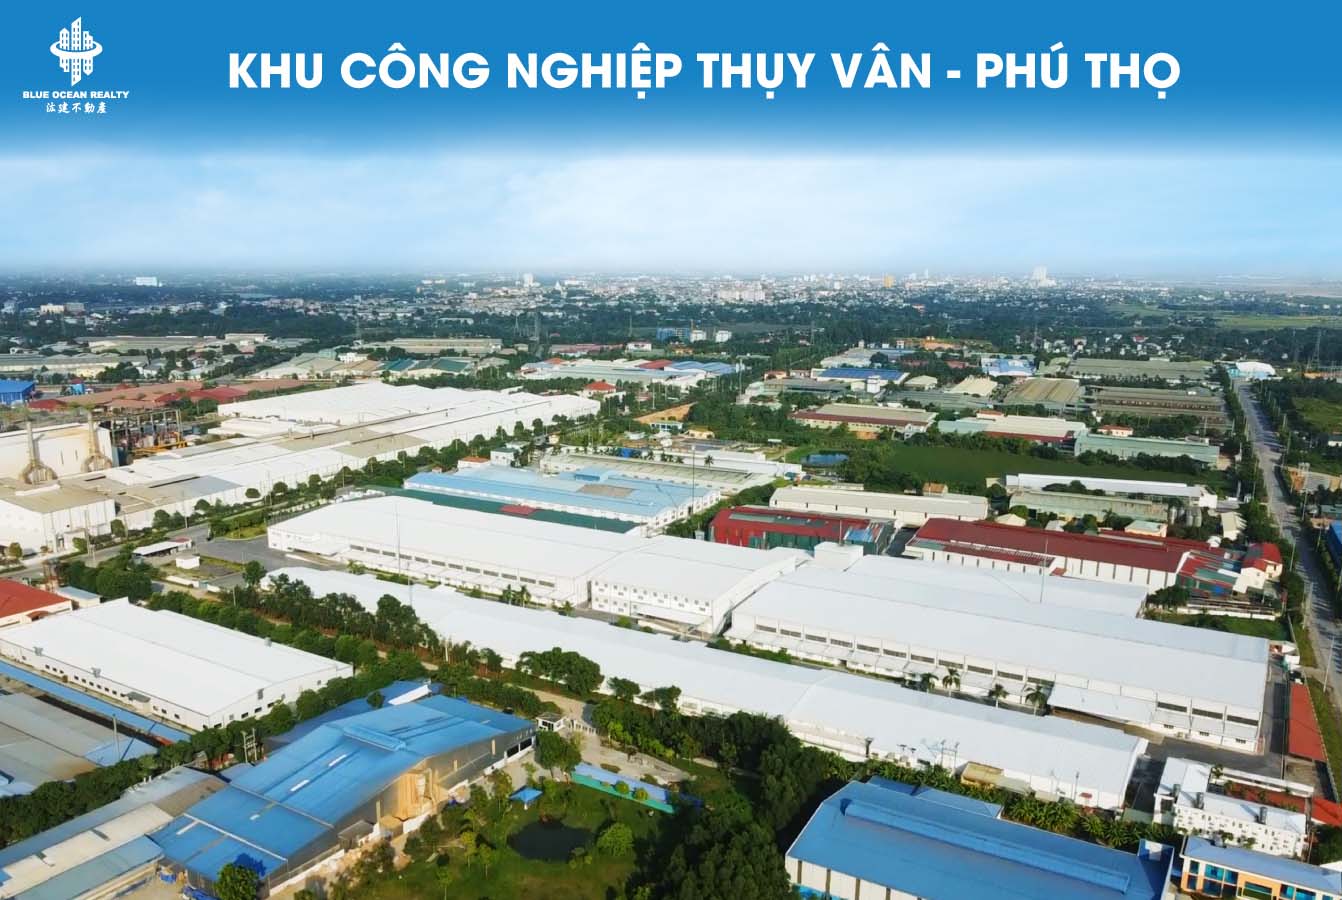 Khu công nghiệp (KCN) Thụy Vân - Phú Thọ